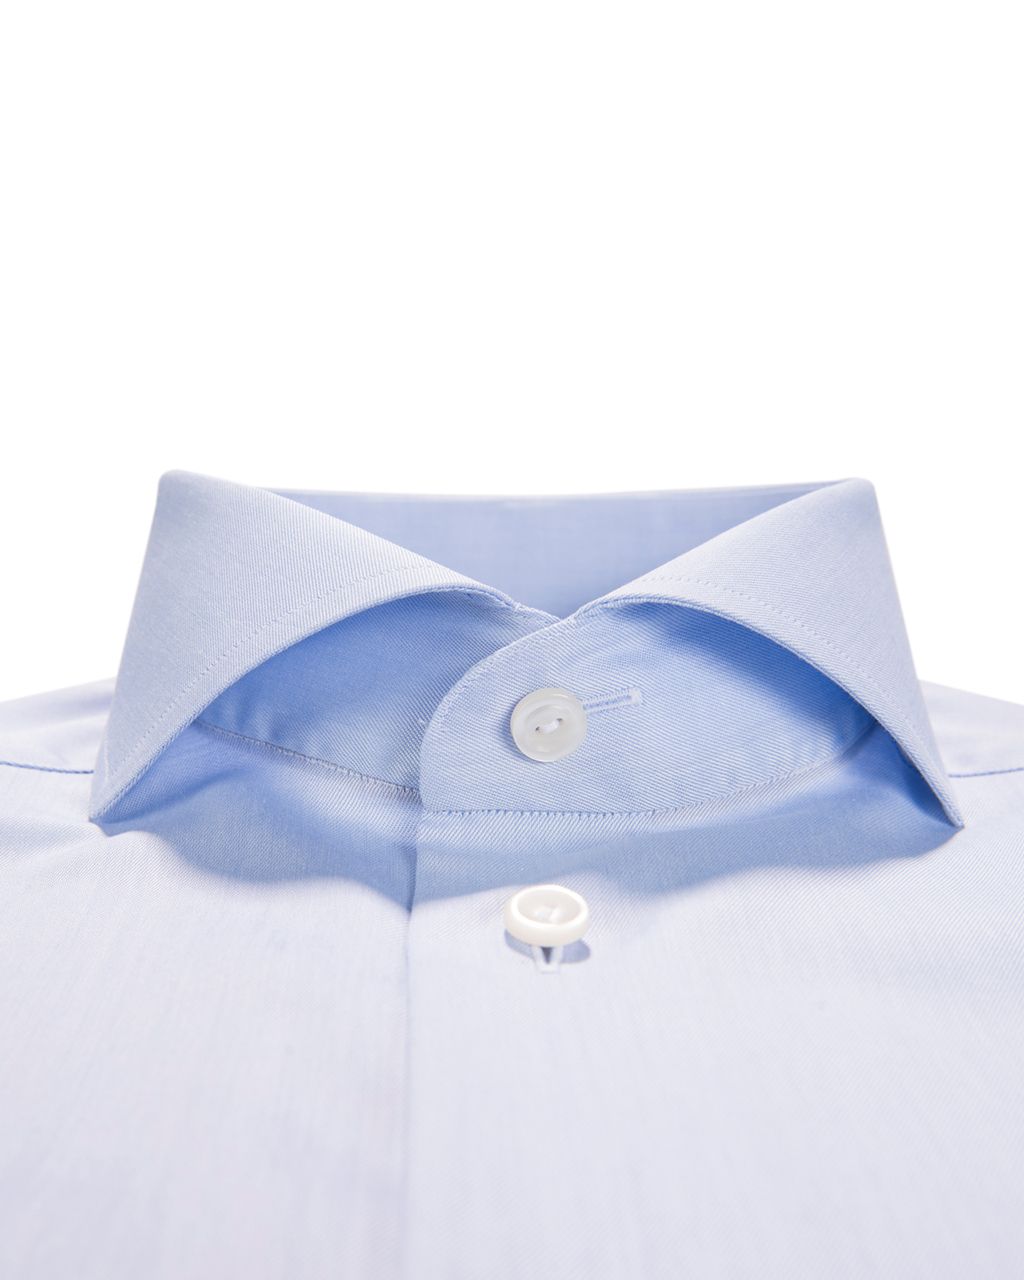 ETON Slim fit Overhemd LM Licht blauw 015651-30-38